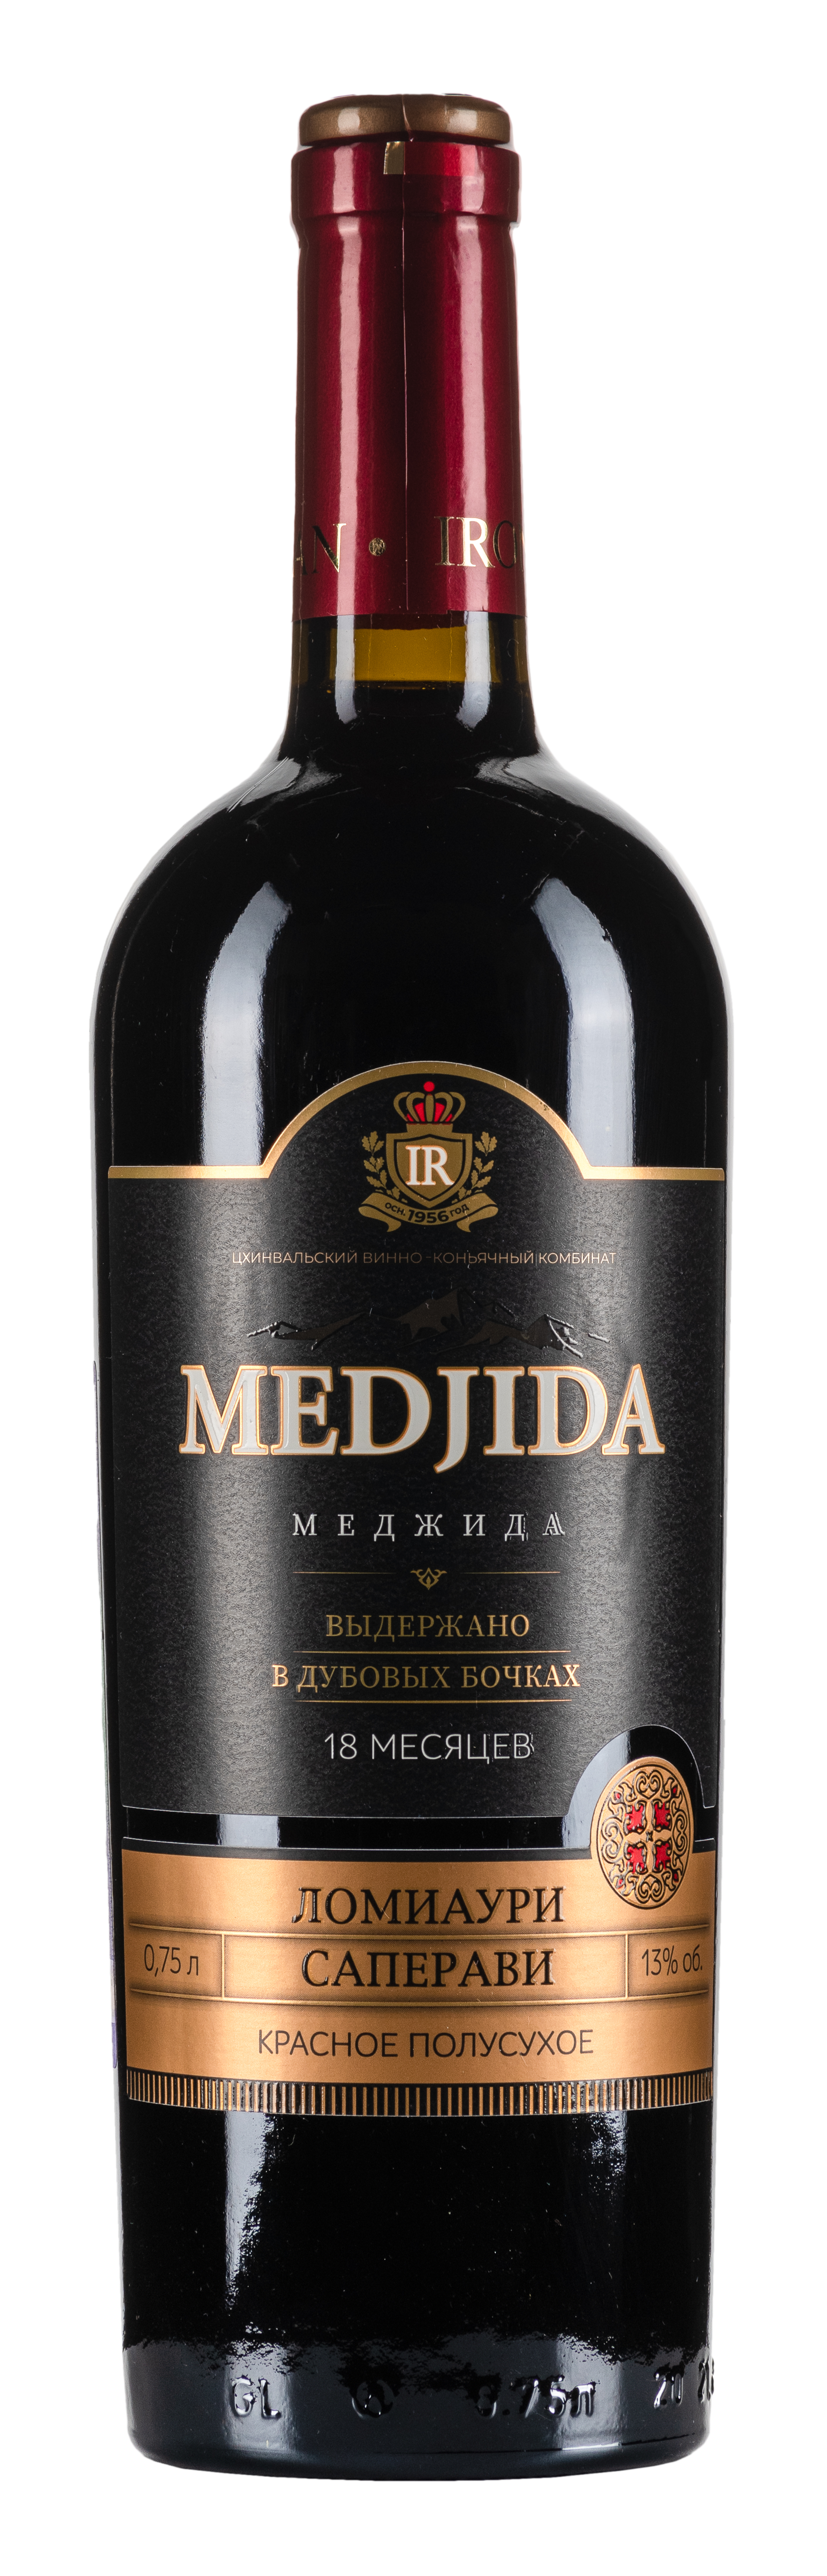 Wine Lomiauri-Saperavi (Medjida)